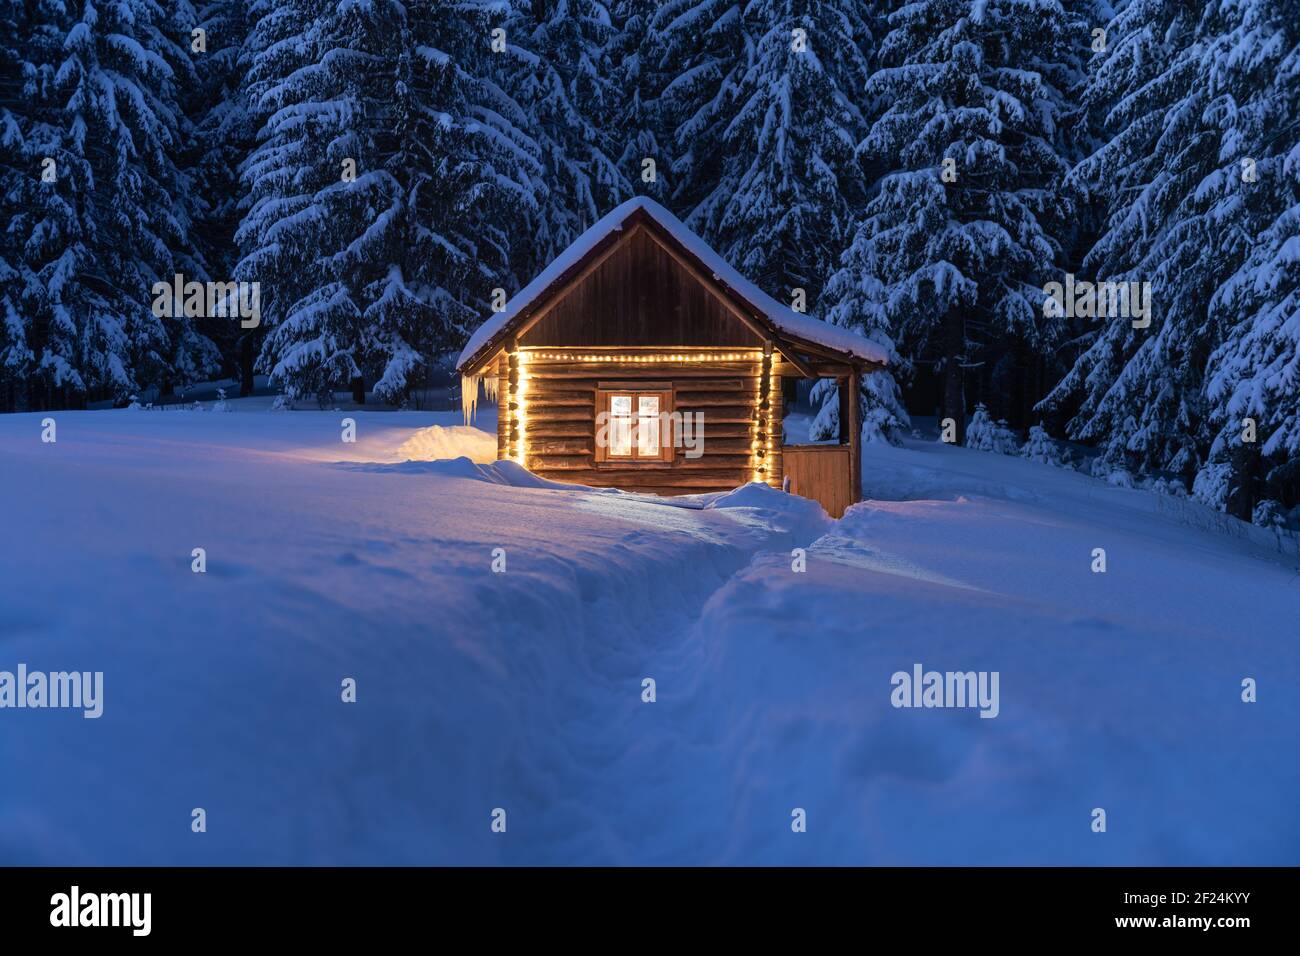 Fantastico paesaggio invernale con luminosa cabina in legno nella foresta innevata. Casa accogliente in montagna Carpazi. Concetto di festa di Natale Foto Stock